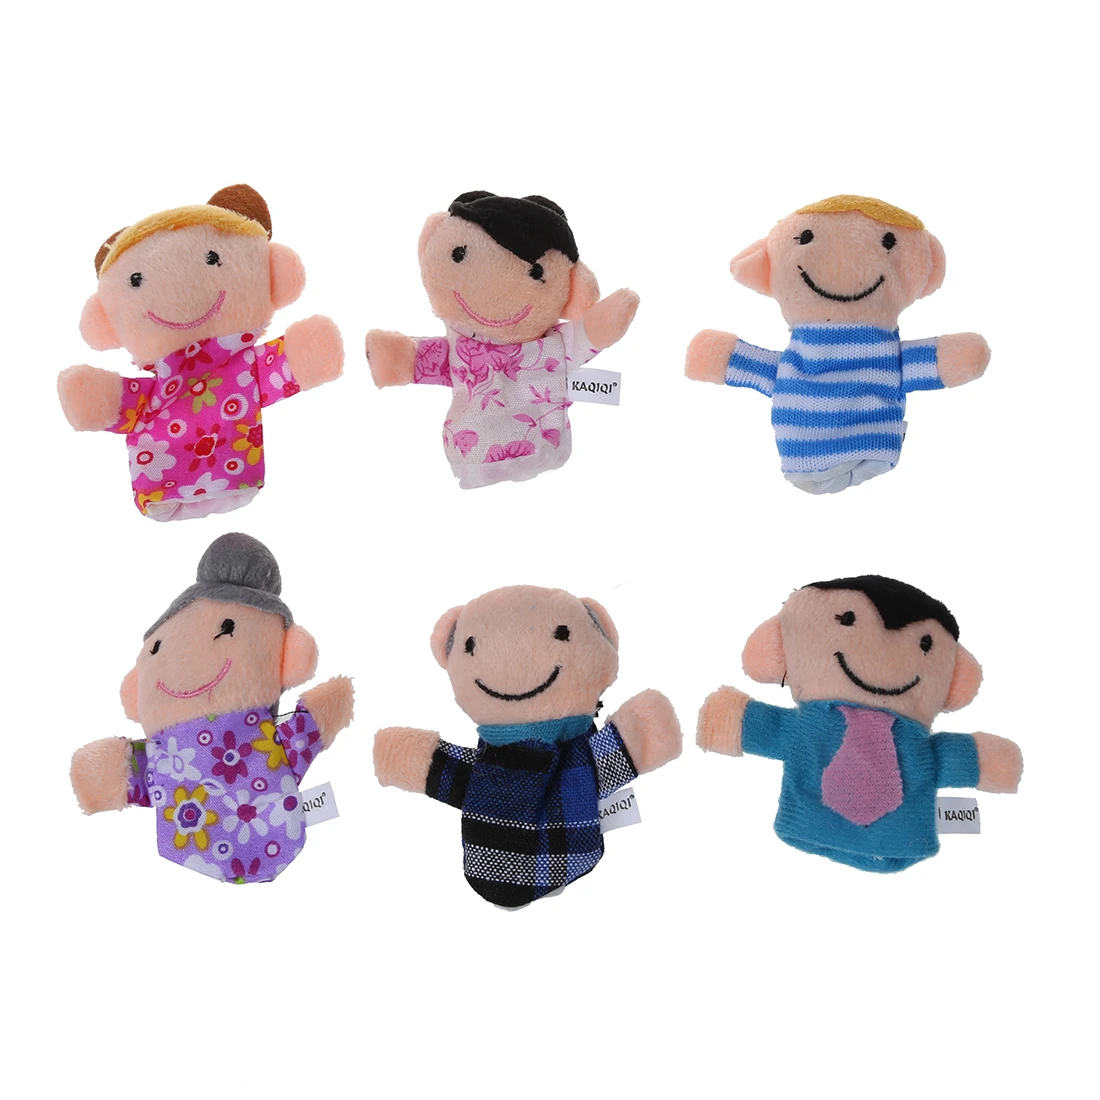 16 шт. история пальчиковые куклы 10 животных 6 человек членов семьи развивающие игрушки